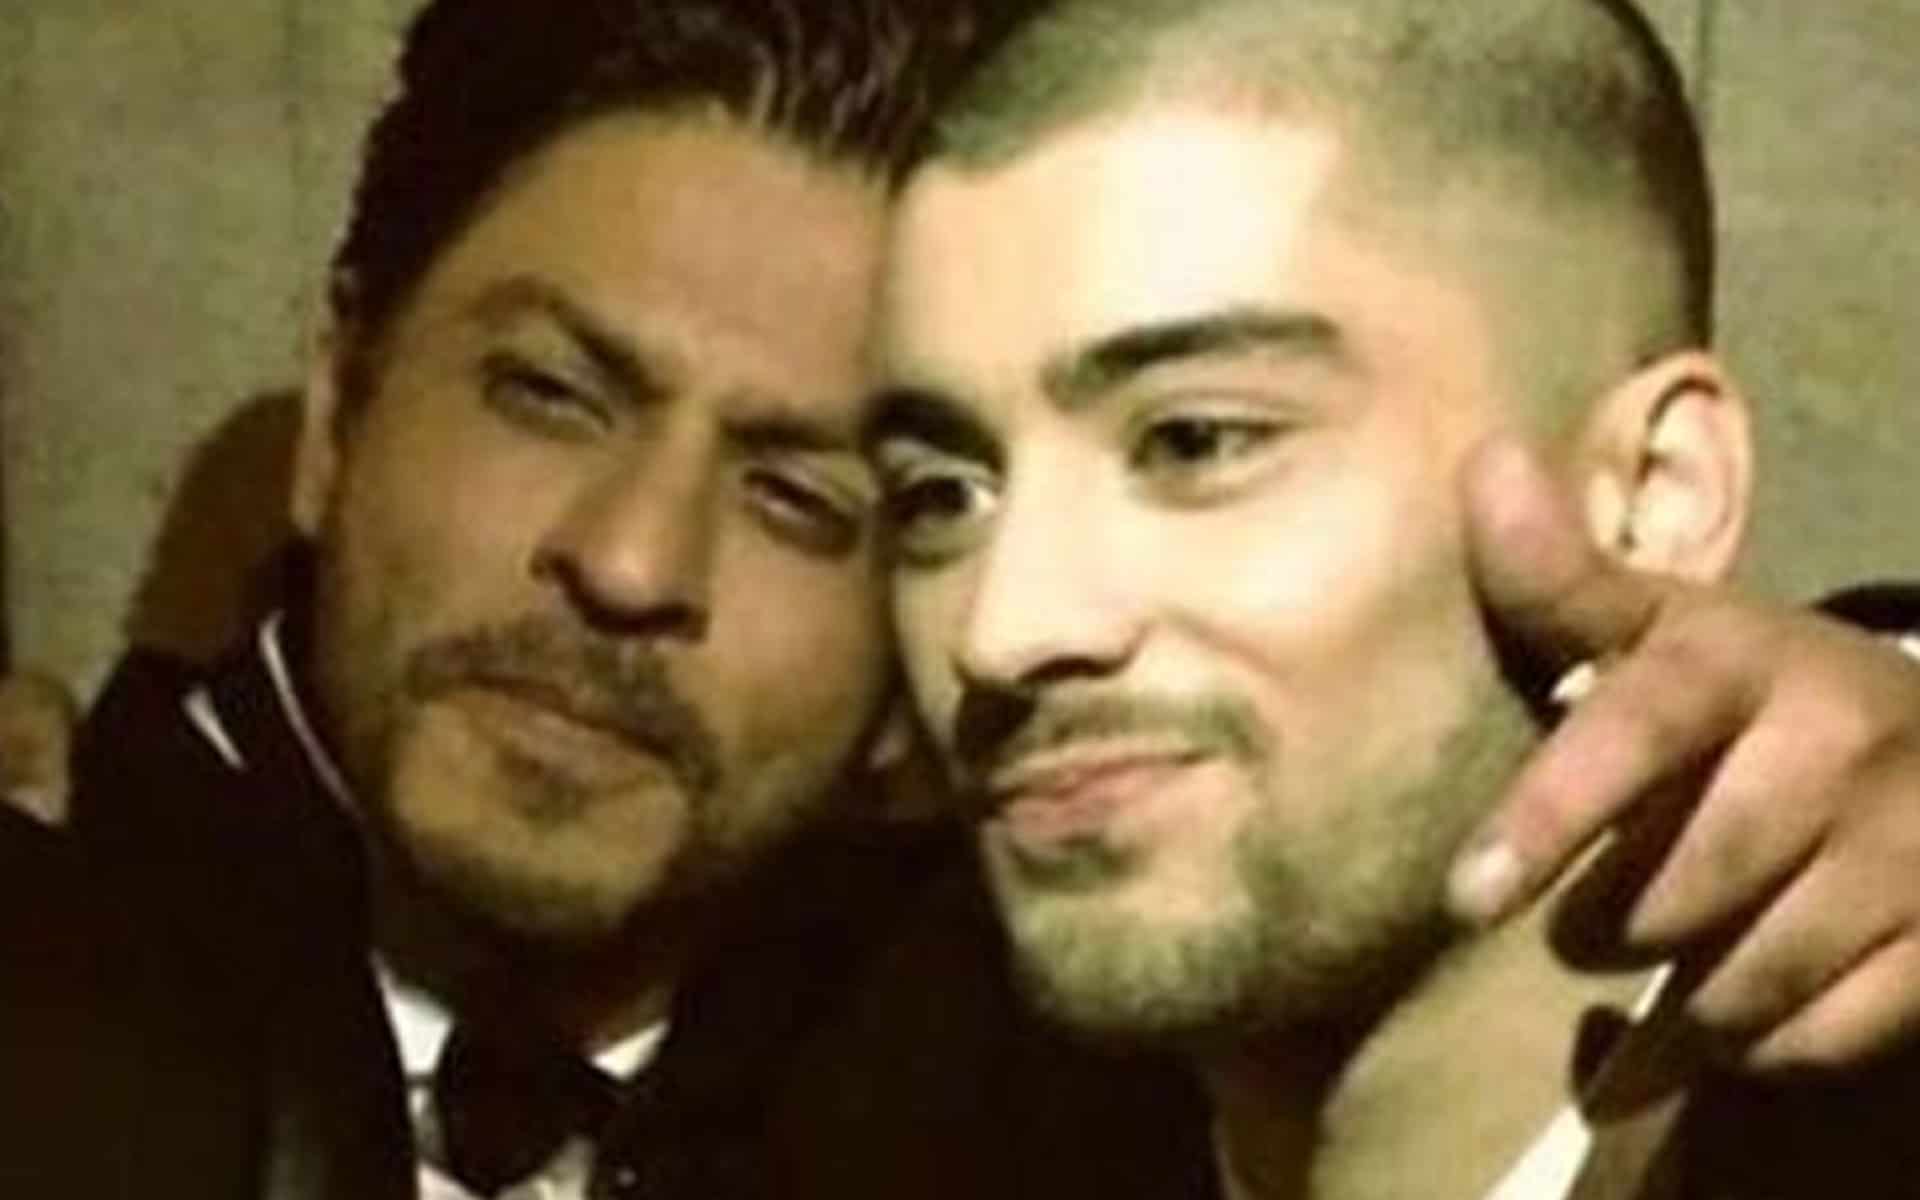 Zayn Malik on SRK: “I personally wasn’t a huge fan until I met him